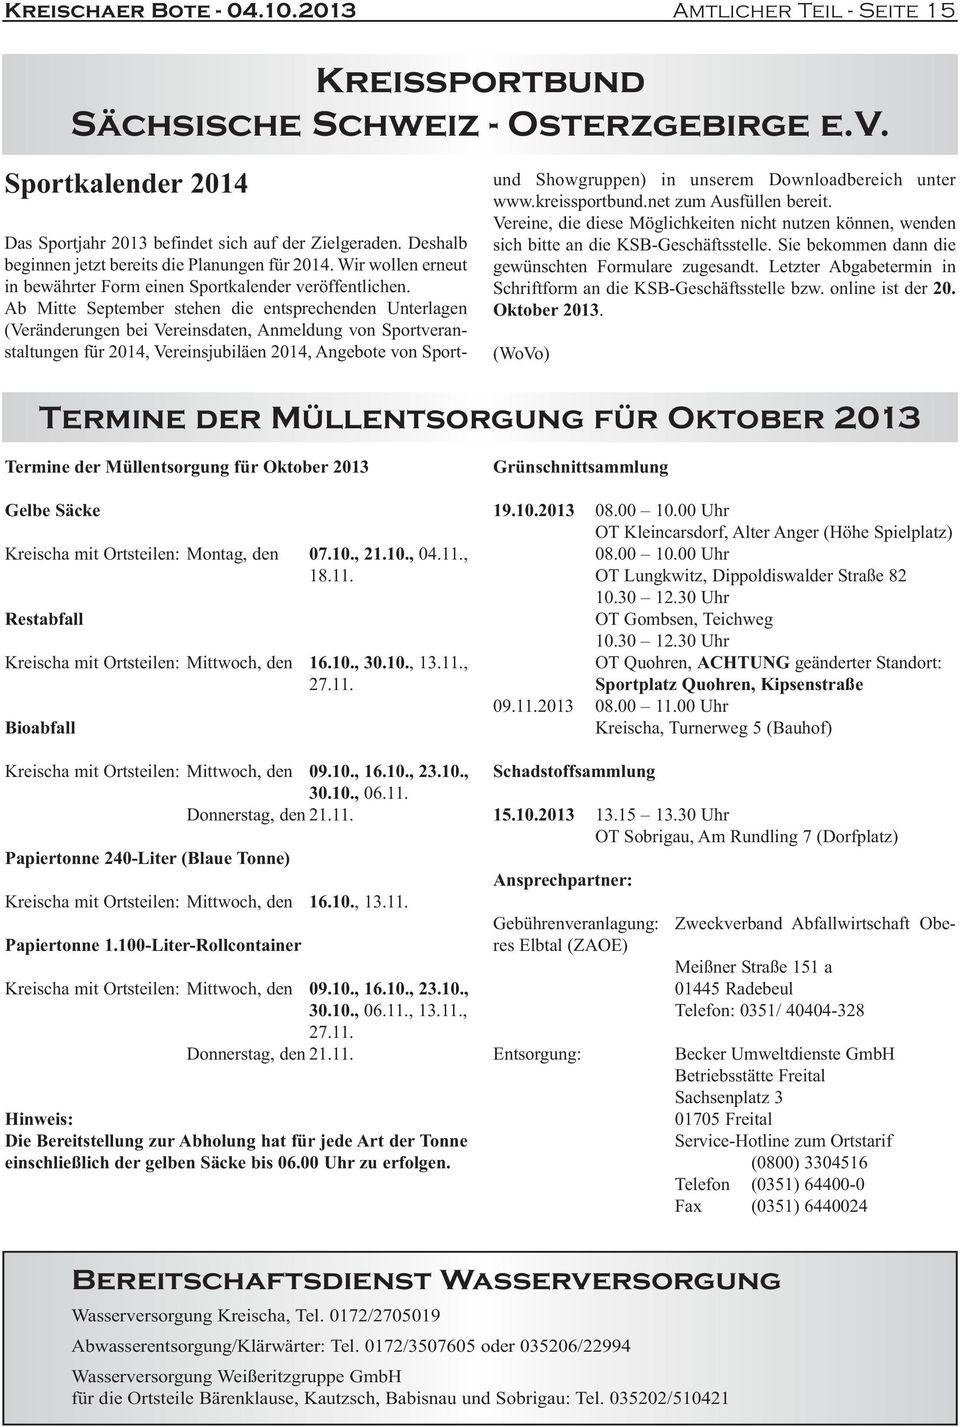 Ab Mitte September stehen die entsprechenden Unterlagen (Veränderungen bei Vereinsdaten, Anmeldung von Sportveranstaltungen für 2014, Vereinsjubiläen 2014, Angebote von Sportund Showgruppen) in